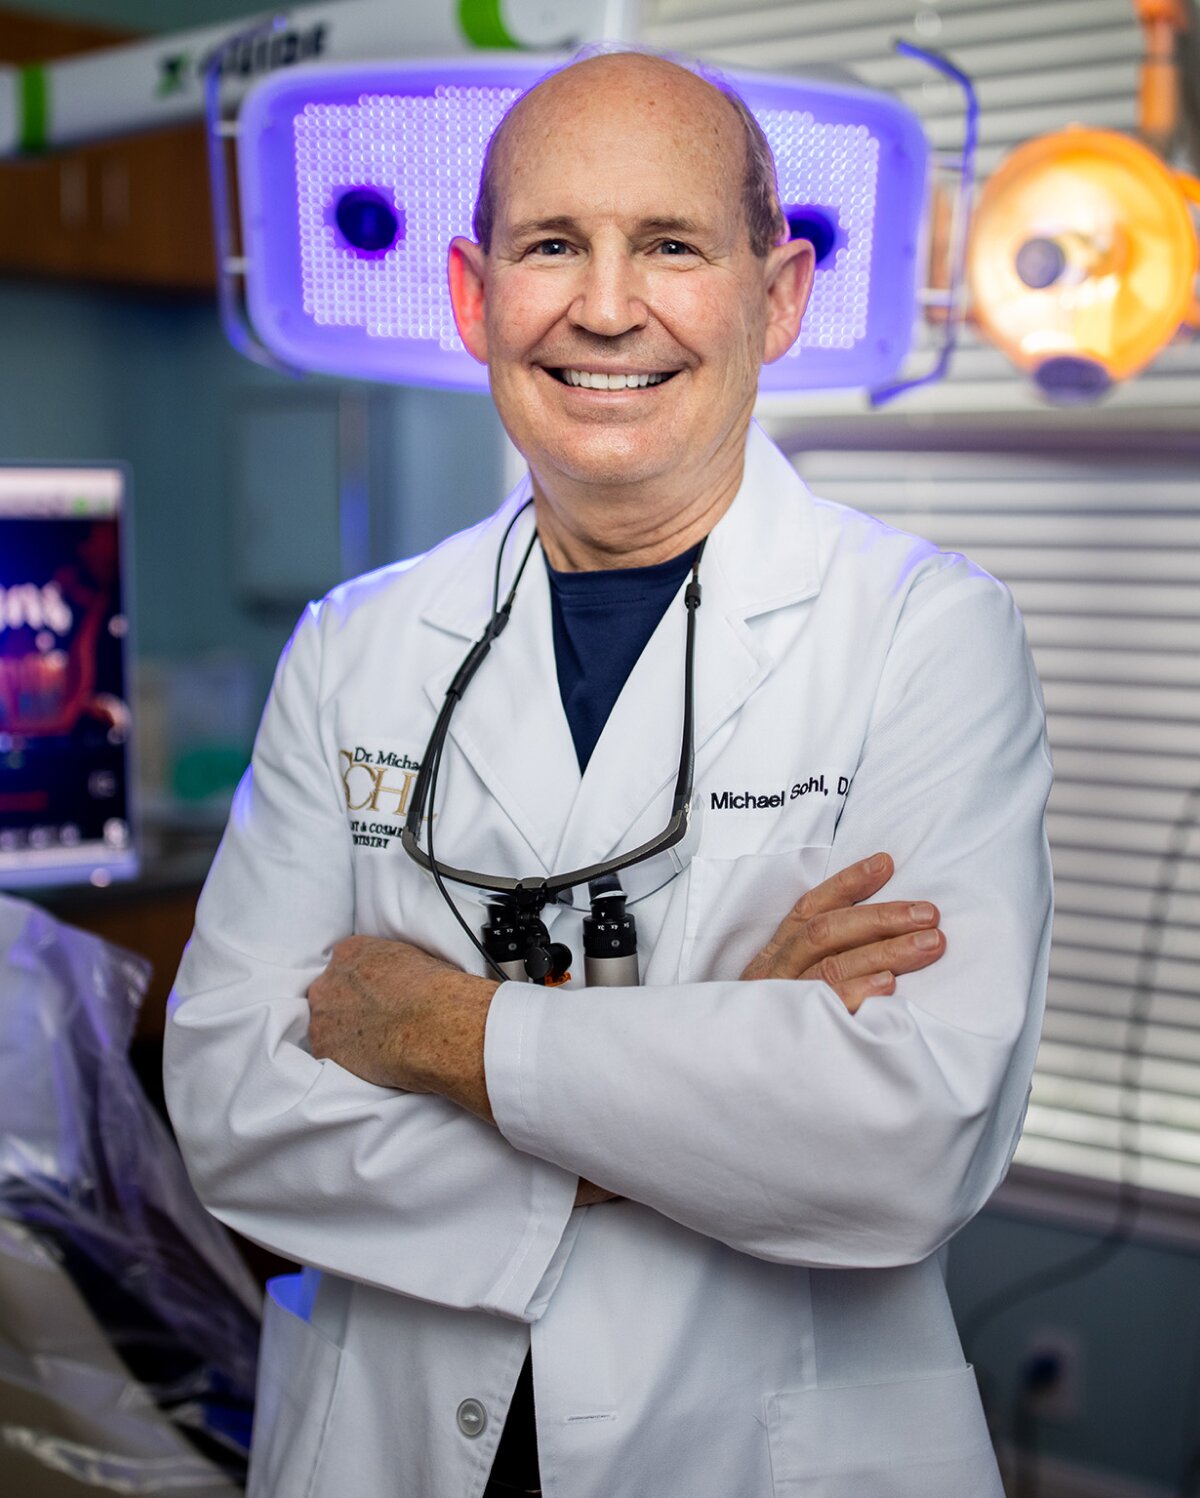 Jupiter Dental Implants Dentist Dr. Sohl